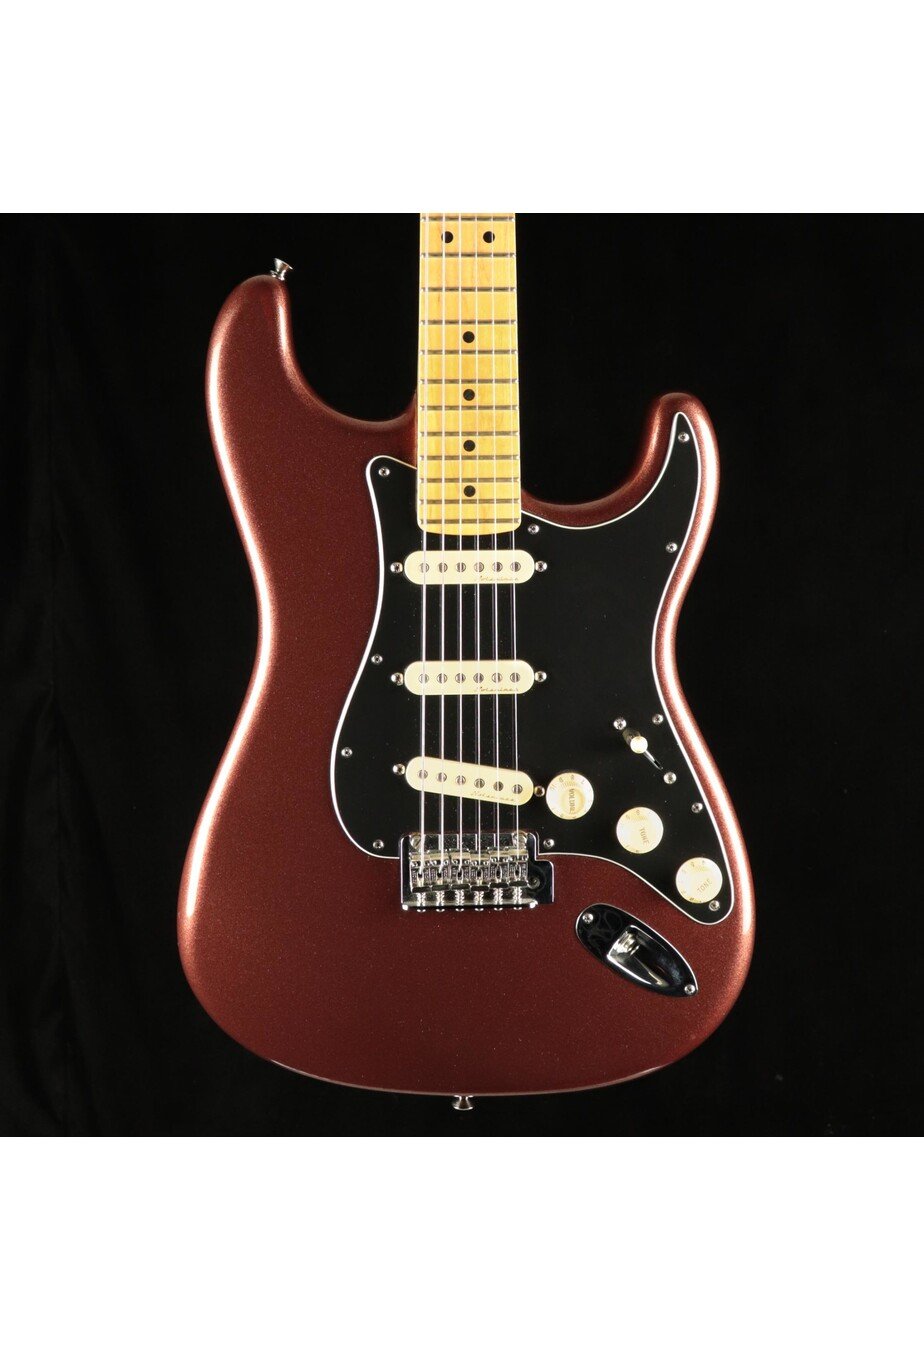 Stratocaster　Guitar　Vault　Fender　Deluxe　John　Roadhouse　Copper　Mann's